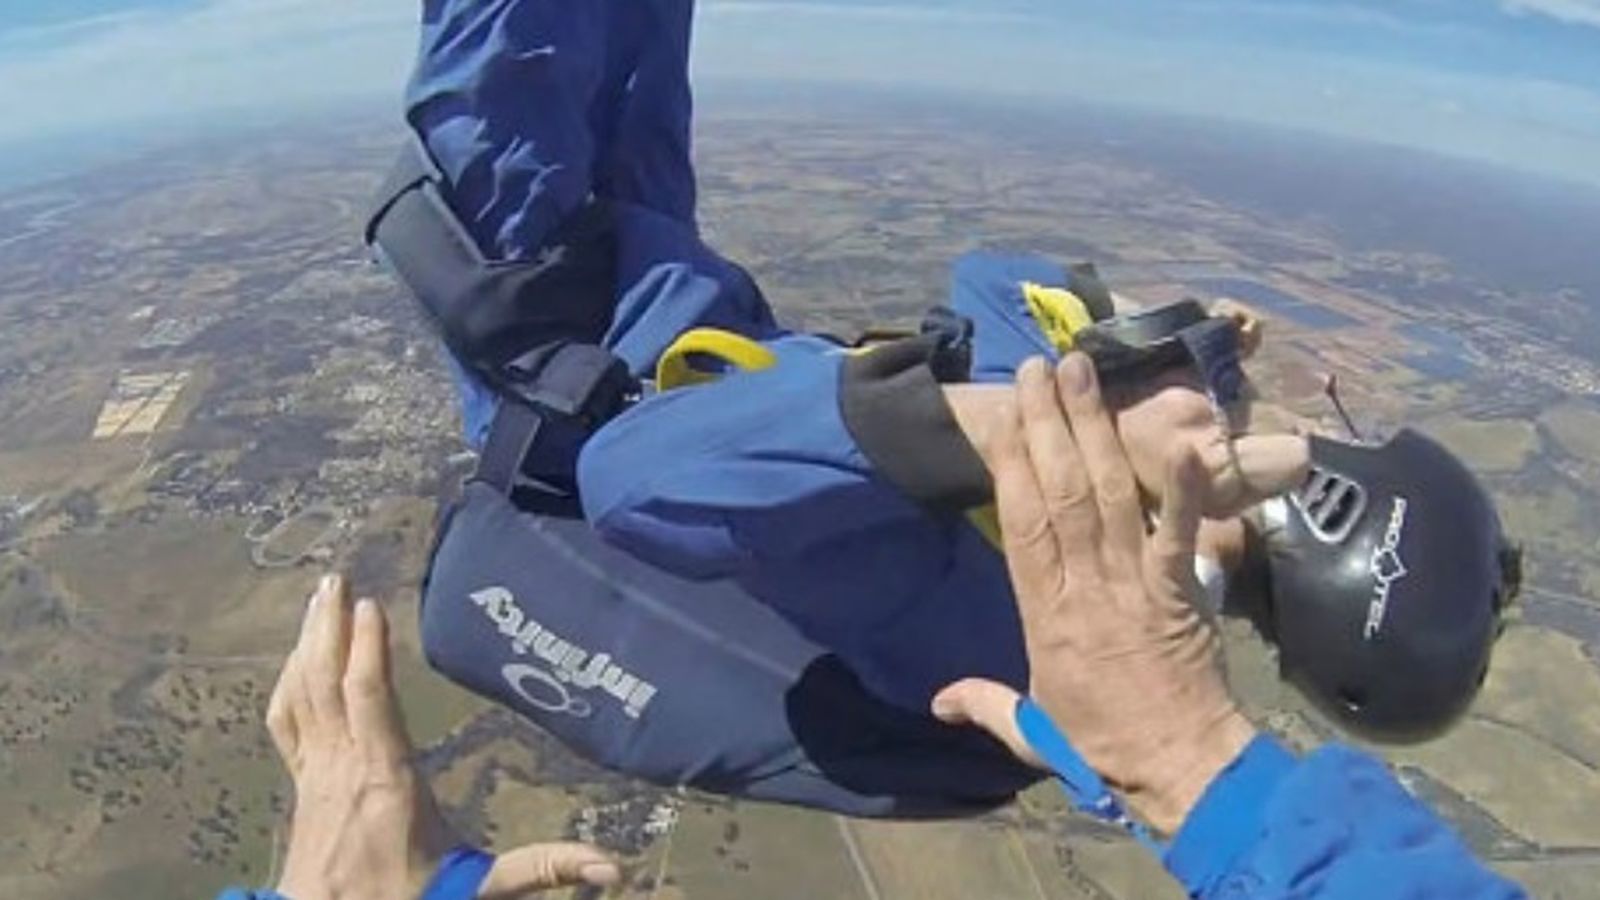 Foto: Christopher, el paracaidista que quedó inconsciente en pleno descenso (YouTube)